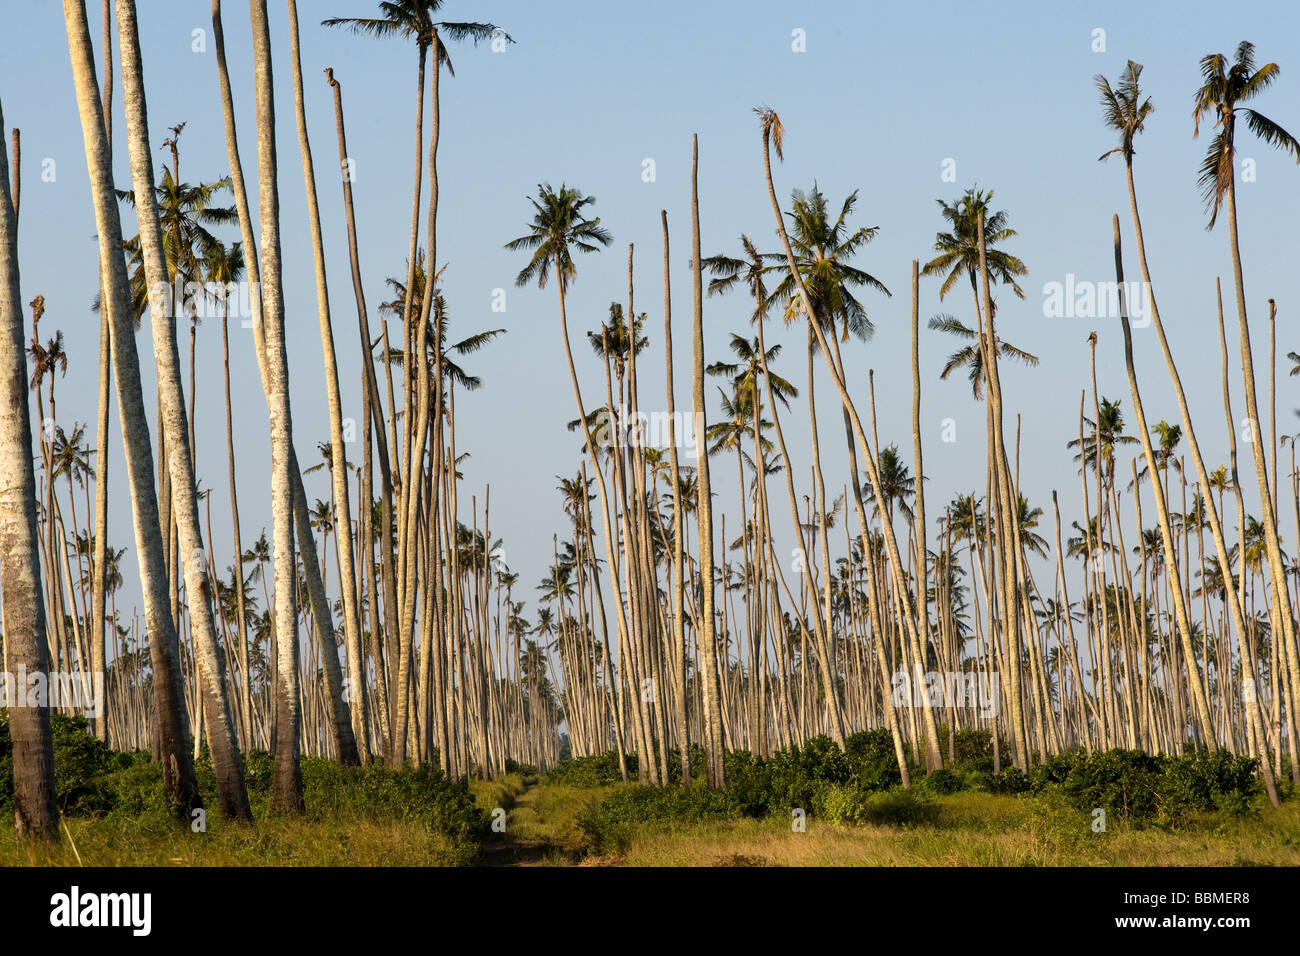 Las palmas de coco de morir de una enfermedad Quelimane, Mozambique Foto de stock